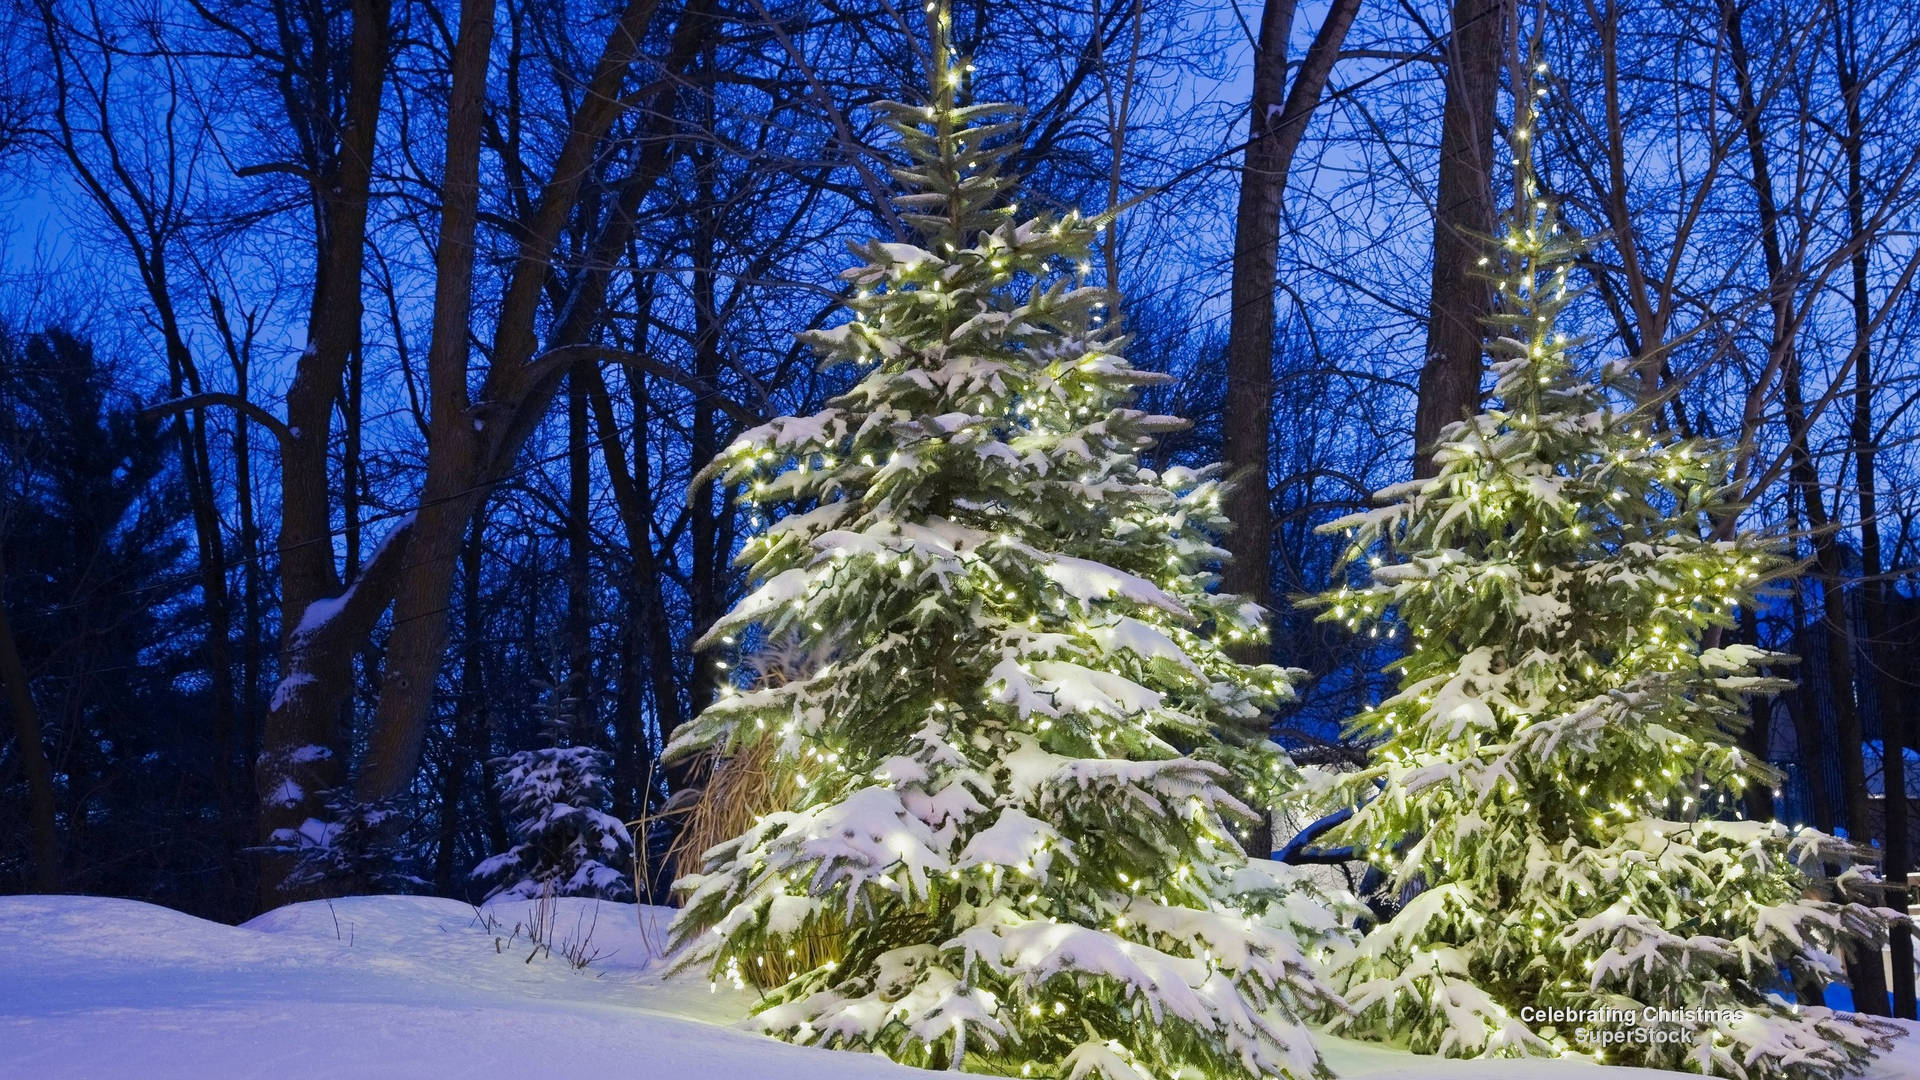 En eventyrland af strålende sne og høje nåletræer, det perfekte sted for dine juledage! Wallpaper